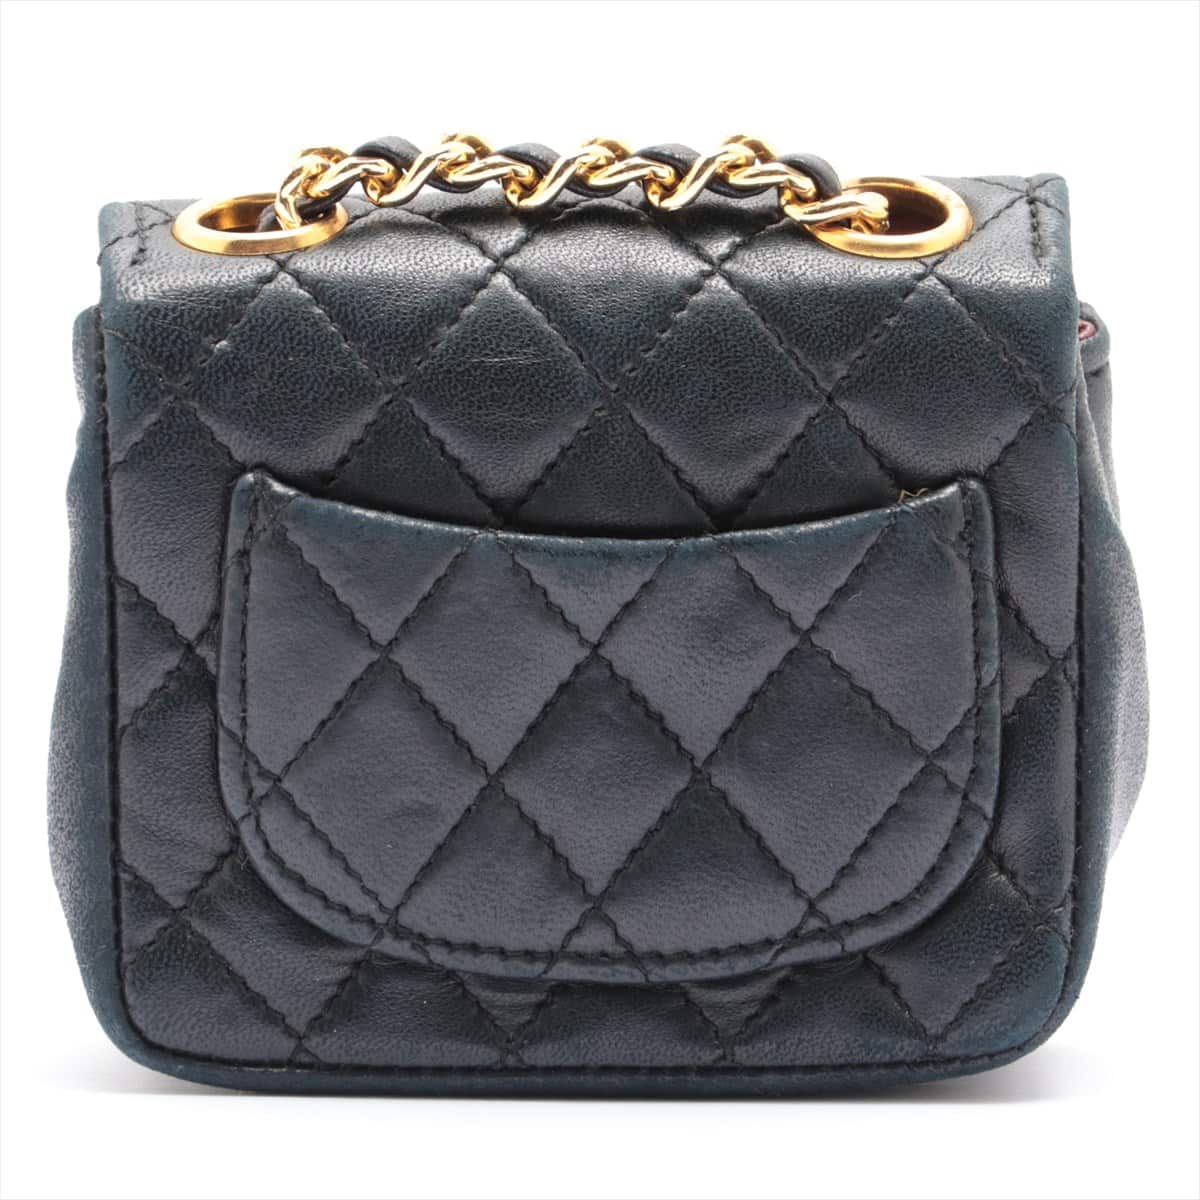 Chanel Mini Mini Matelasse Lambskin Chain shoulder bag Black Gold Metal fittings No serial number